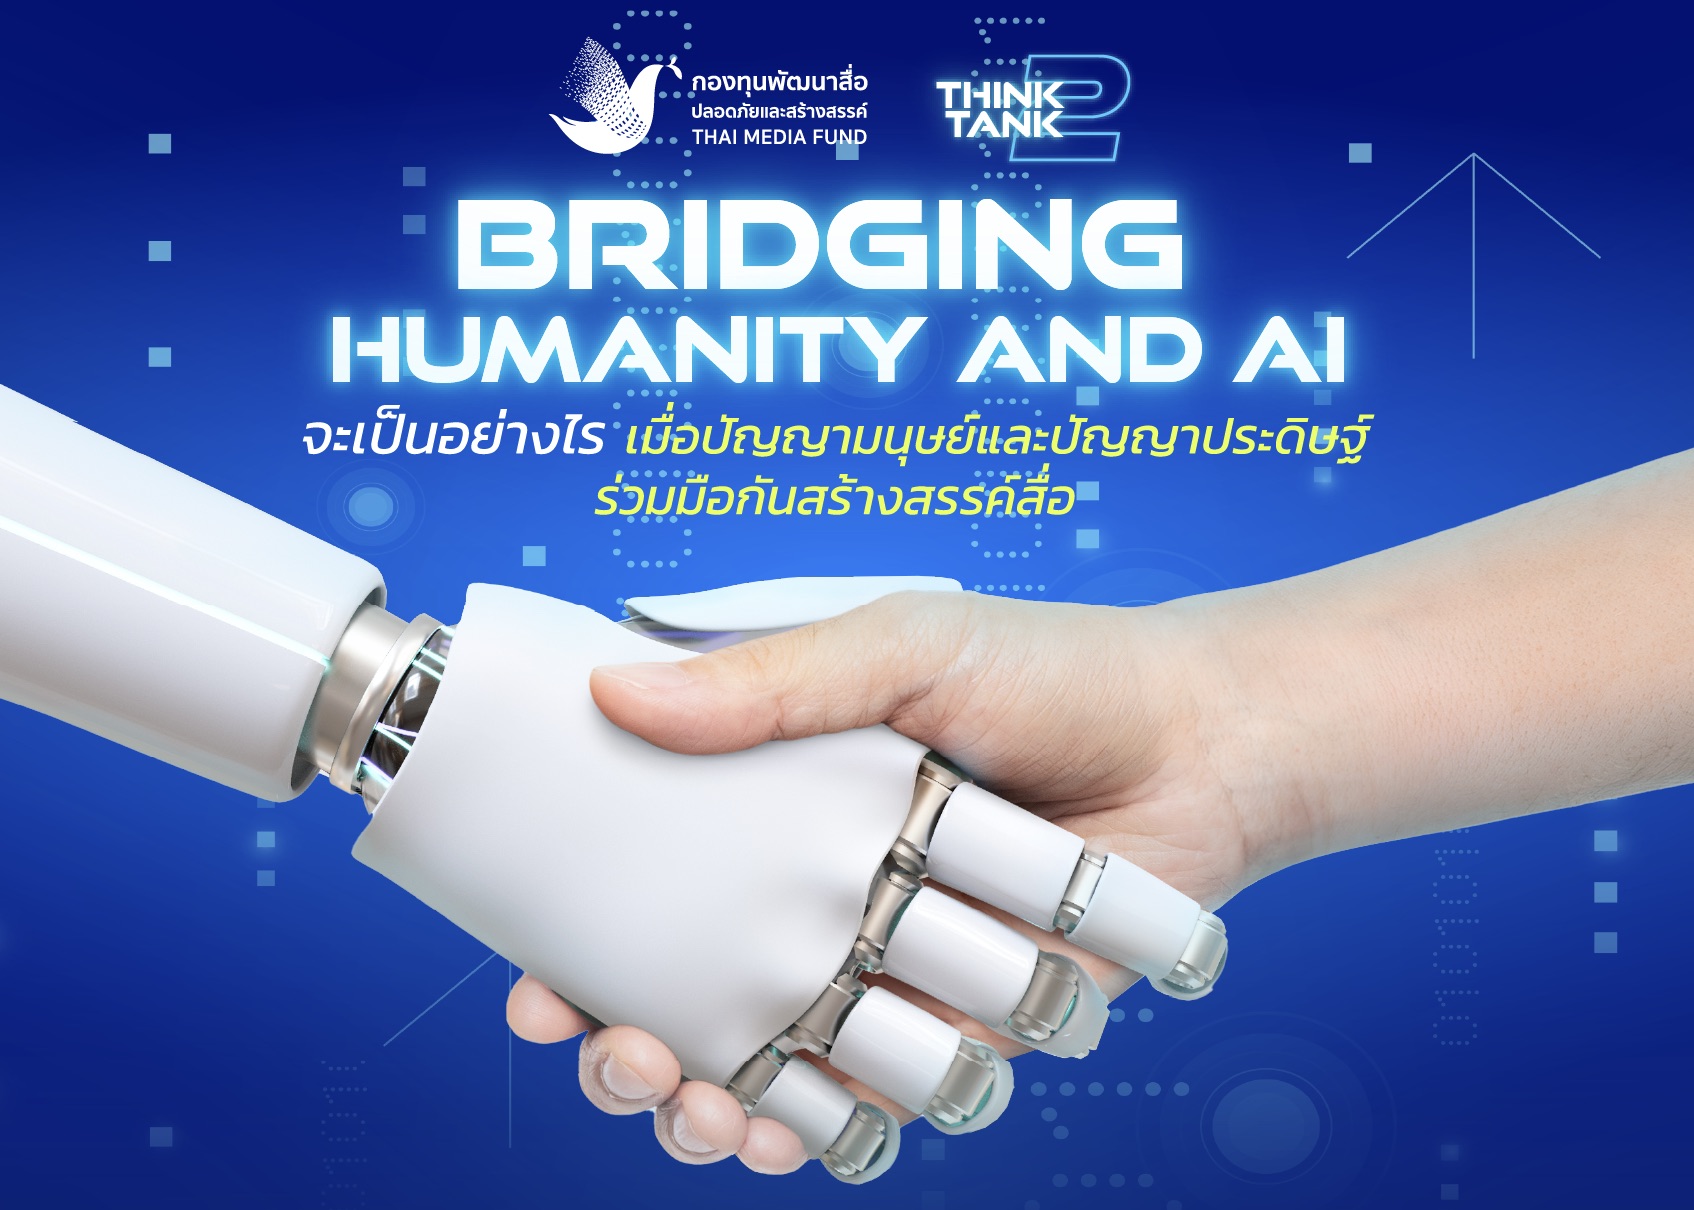 กองทุนพัฒนาสื่อปลอดภัยและสร้างสรรค์ จัดเสวนา “Bridging Humanity and AI”